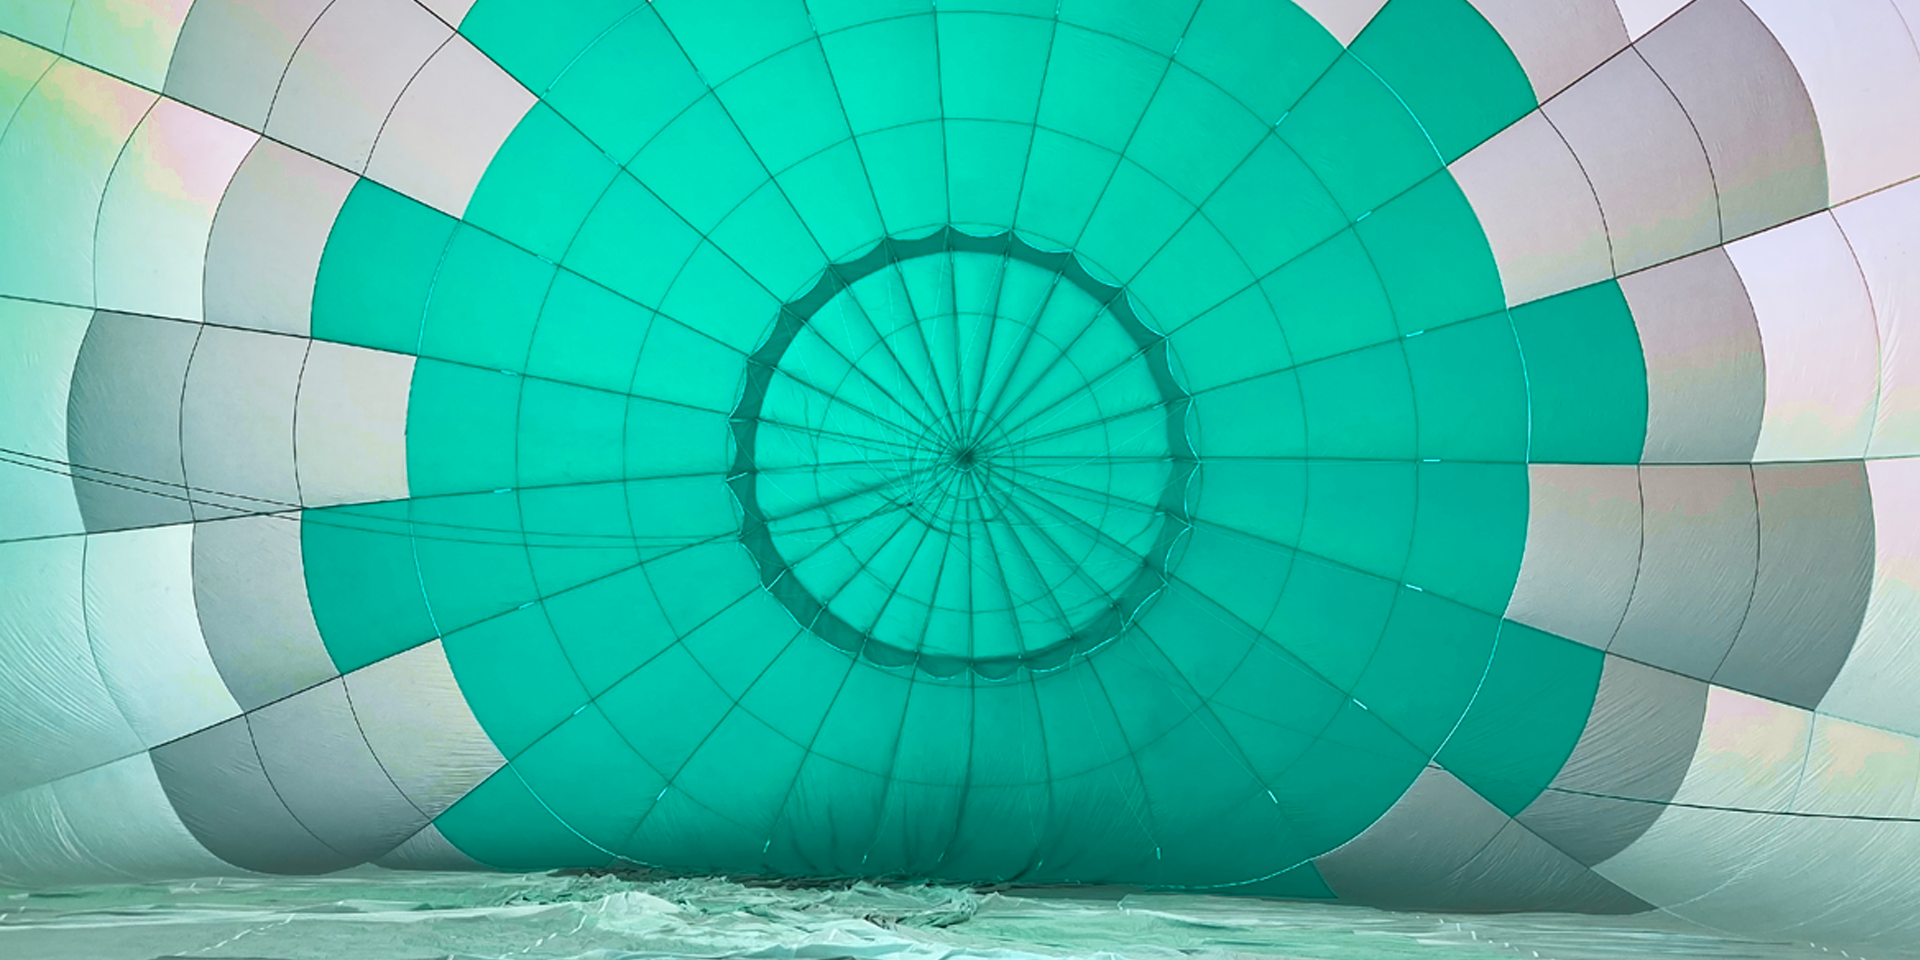 Tela de globo aeroestático hinchada tocando el suelo